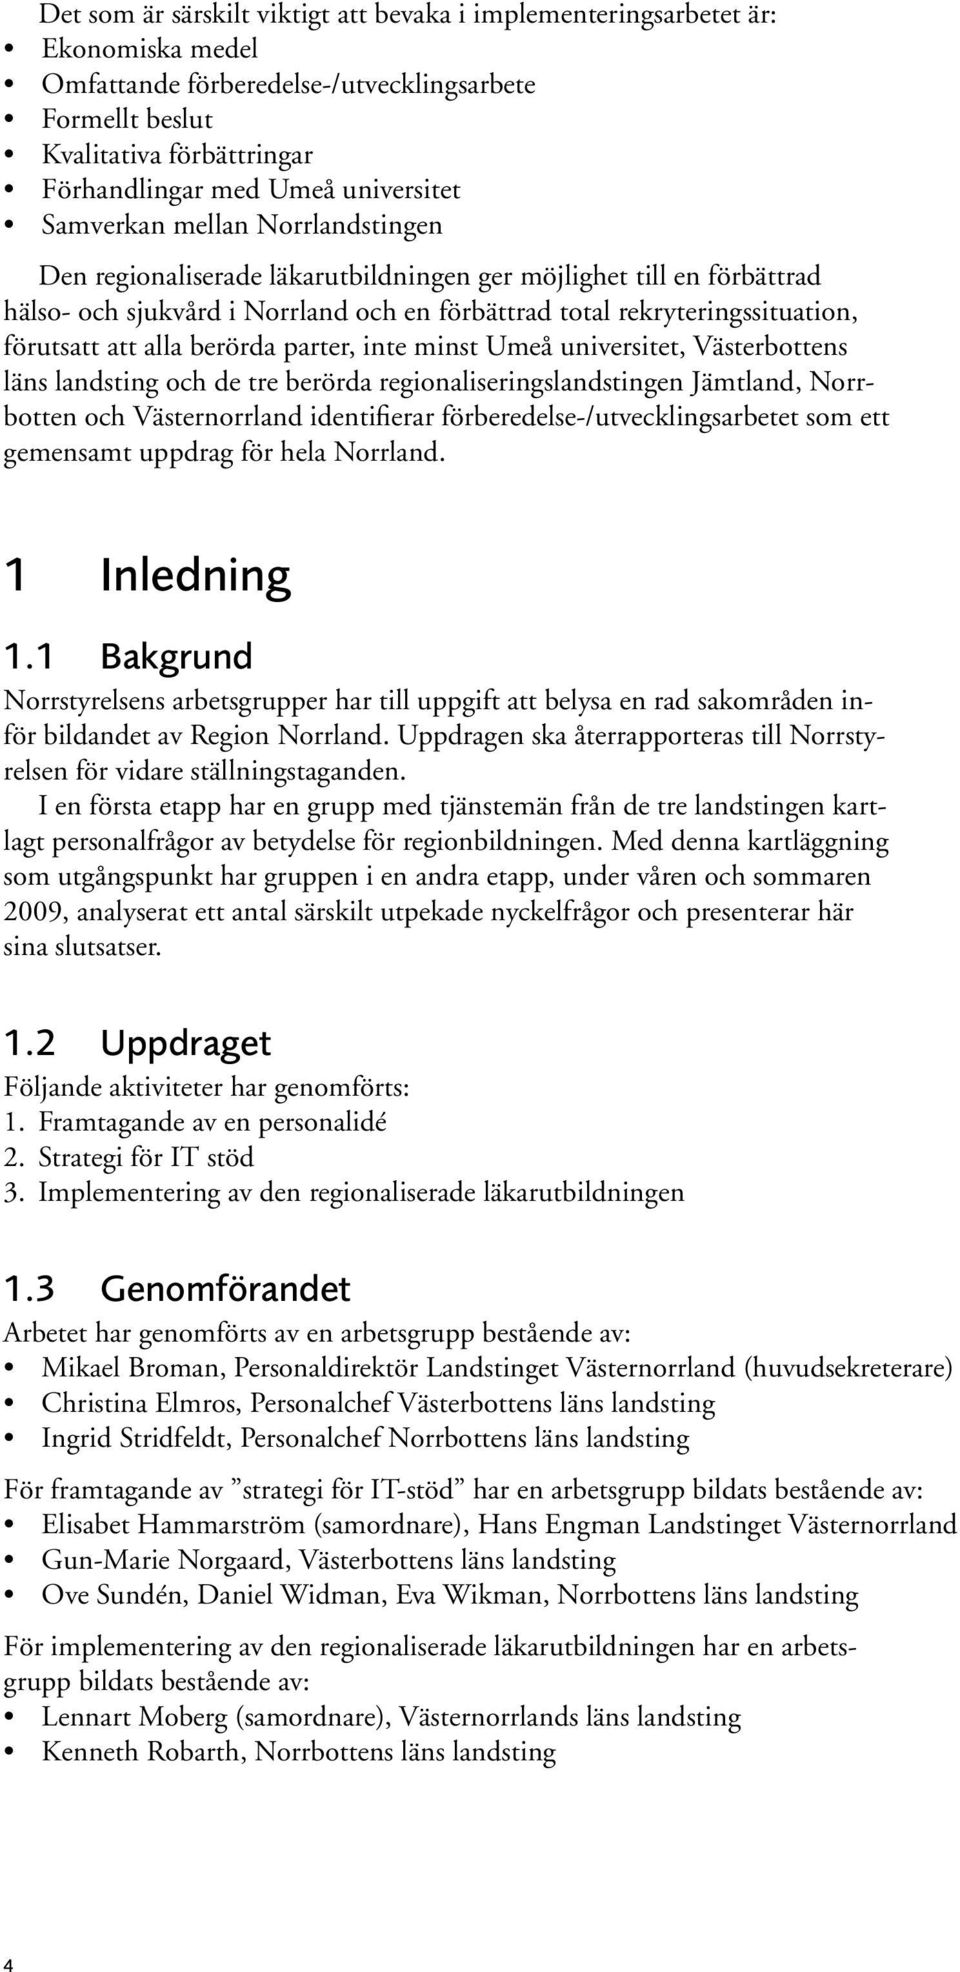 förutsatt att alla berörda parter, inte minst Umeå universitet, Västerbottens läns landsting och de tre berörda regionaliseringslandstingen Jämtland, Norrbotten och Västernorrland identifierar